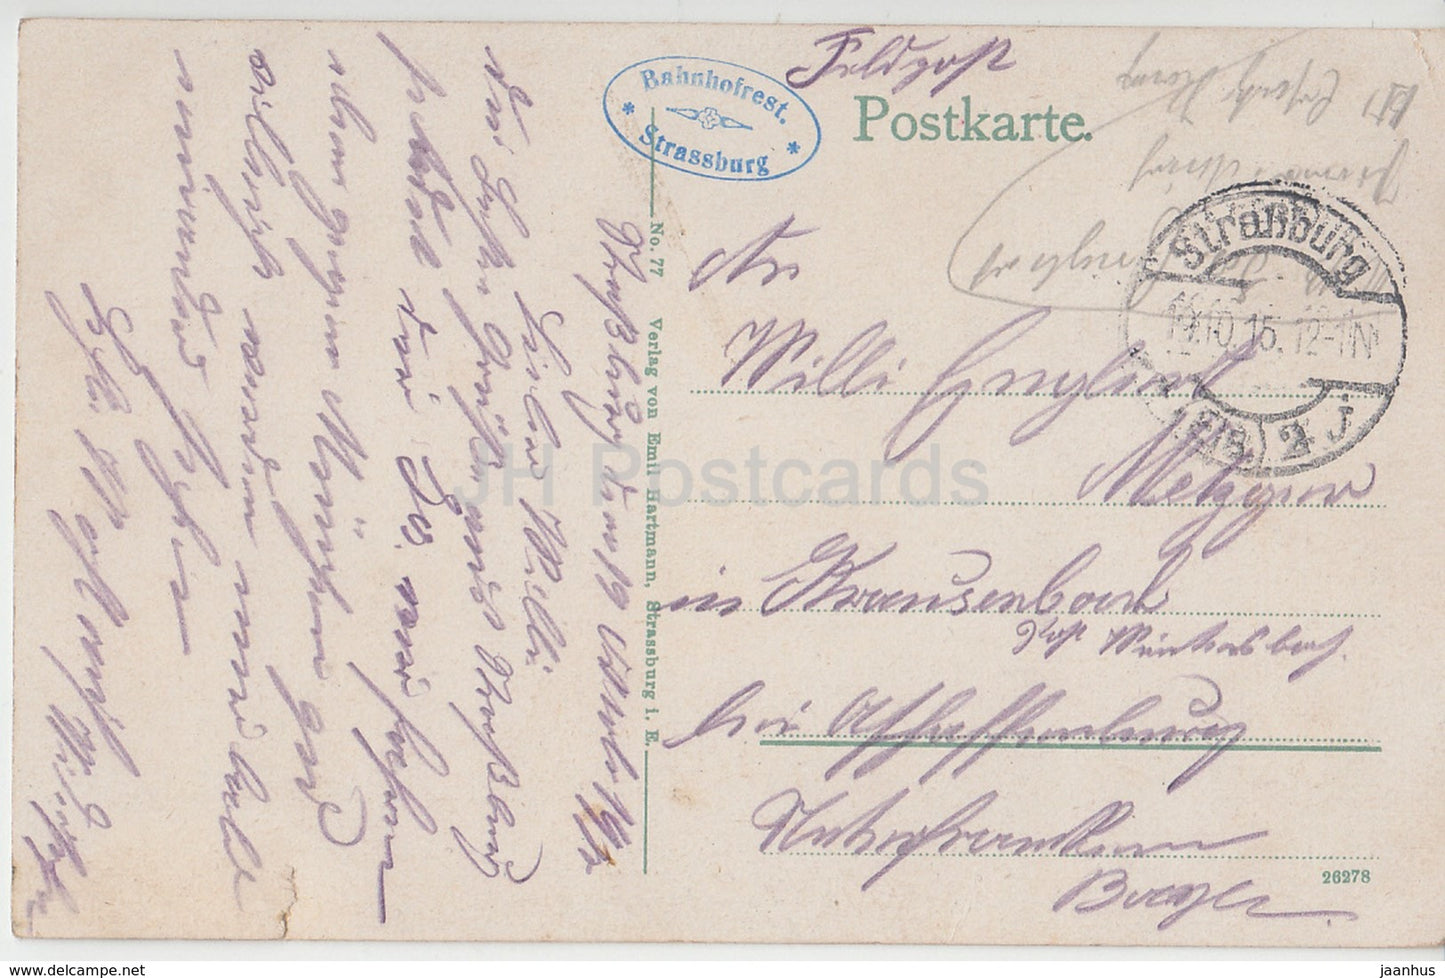 Straßburg - Das Münster - Dom - Feldpost - Bahnhofrest. - 77 - 1912 - alte Postkarte - Frankreich - gebraucht